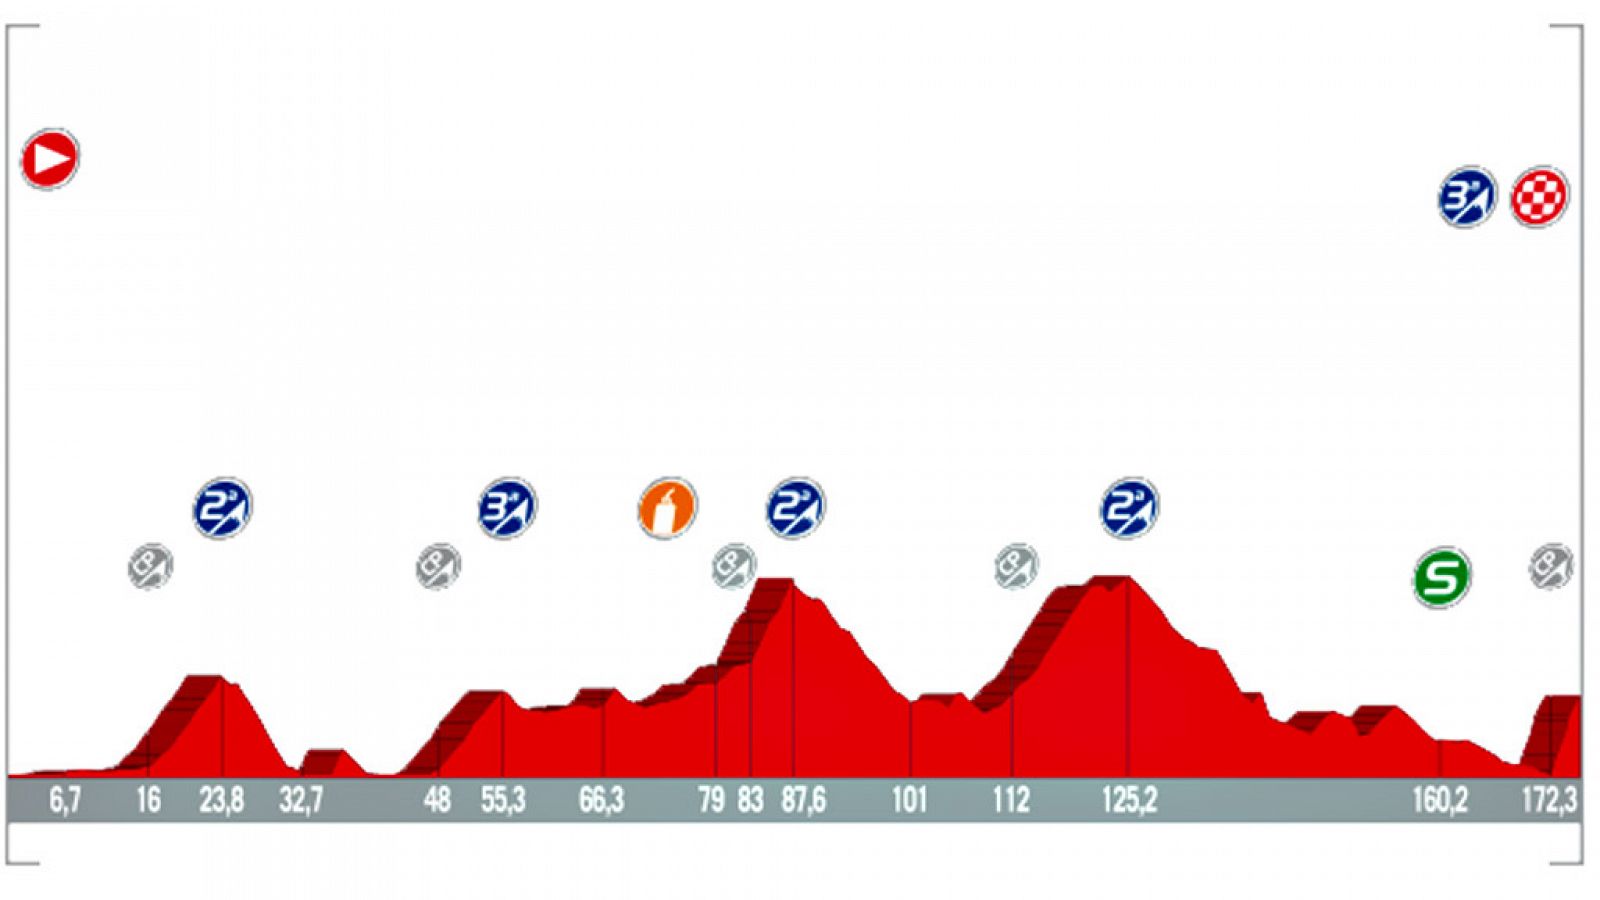 La quinta etapa se disputa este miércoles entre Benicassim y Alcossebre, con un recorrido de 175,7 kilómetros, jornada de media montaña con cinco puertos y final en la Ermita de Santa Lucía.